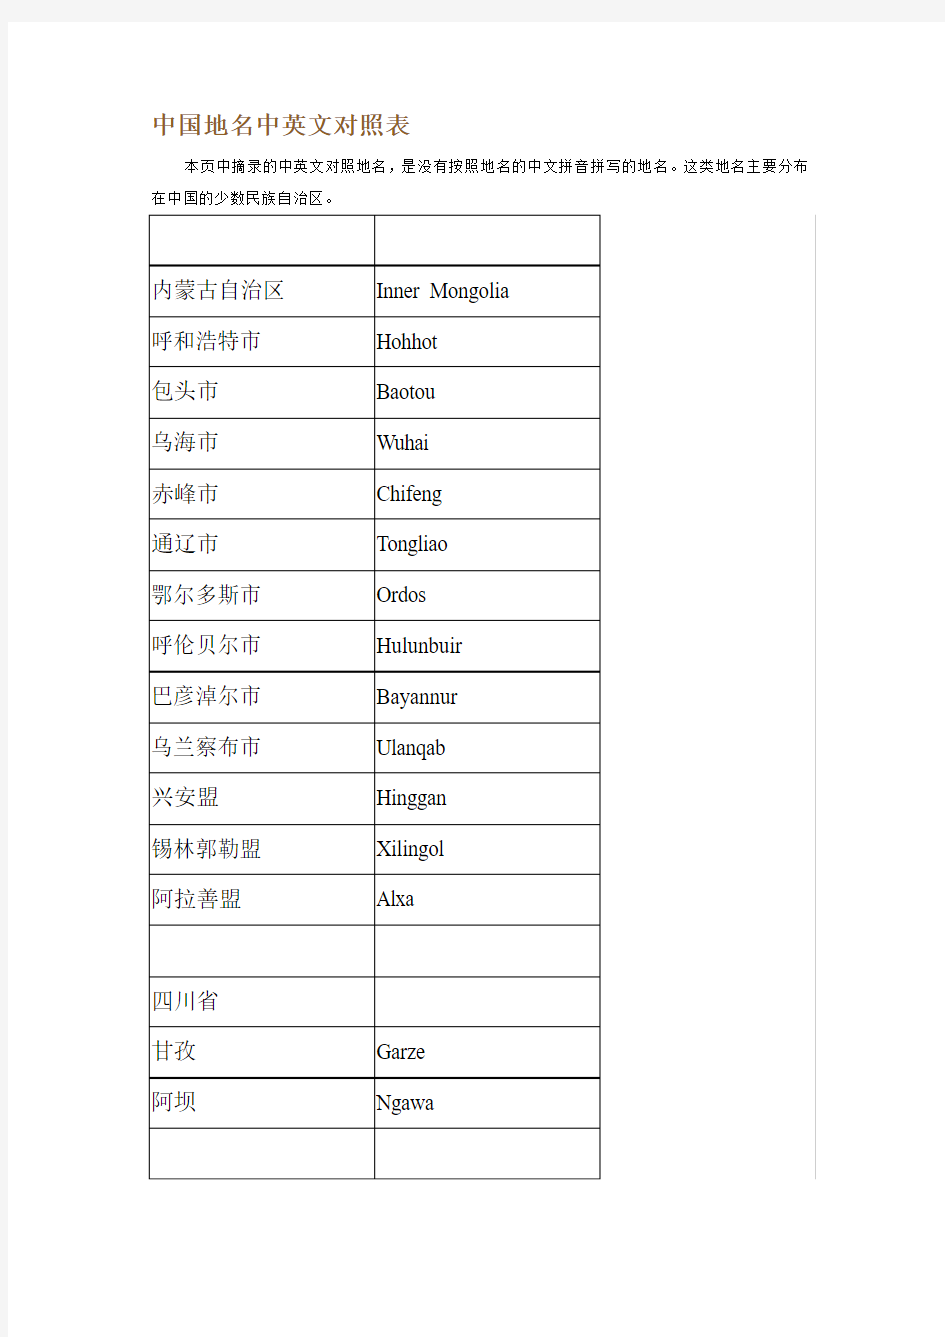 中国地名中英文对照表